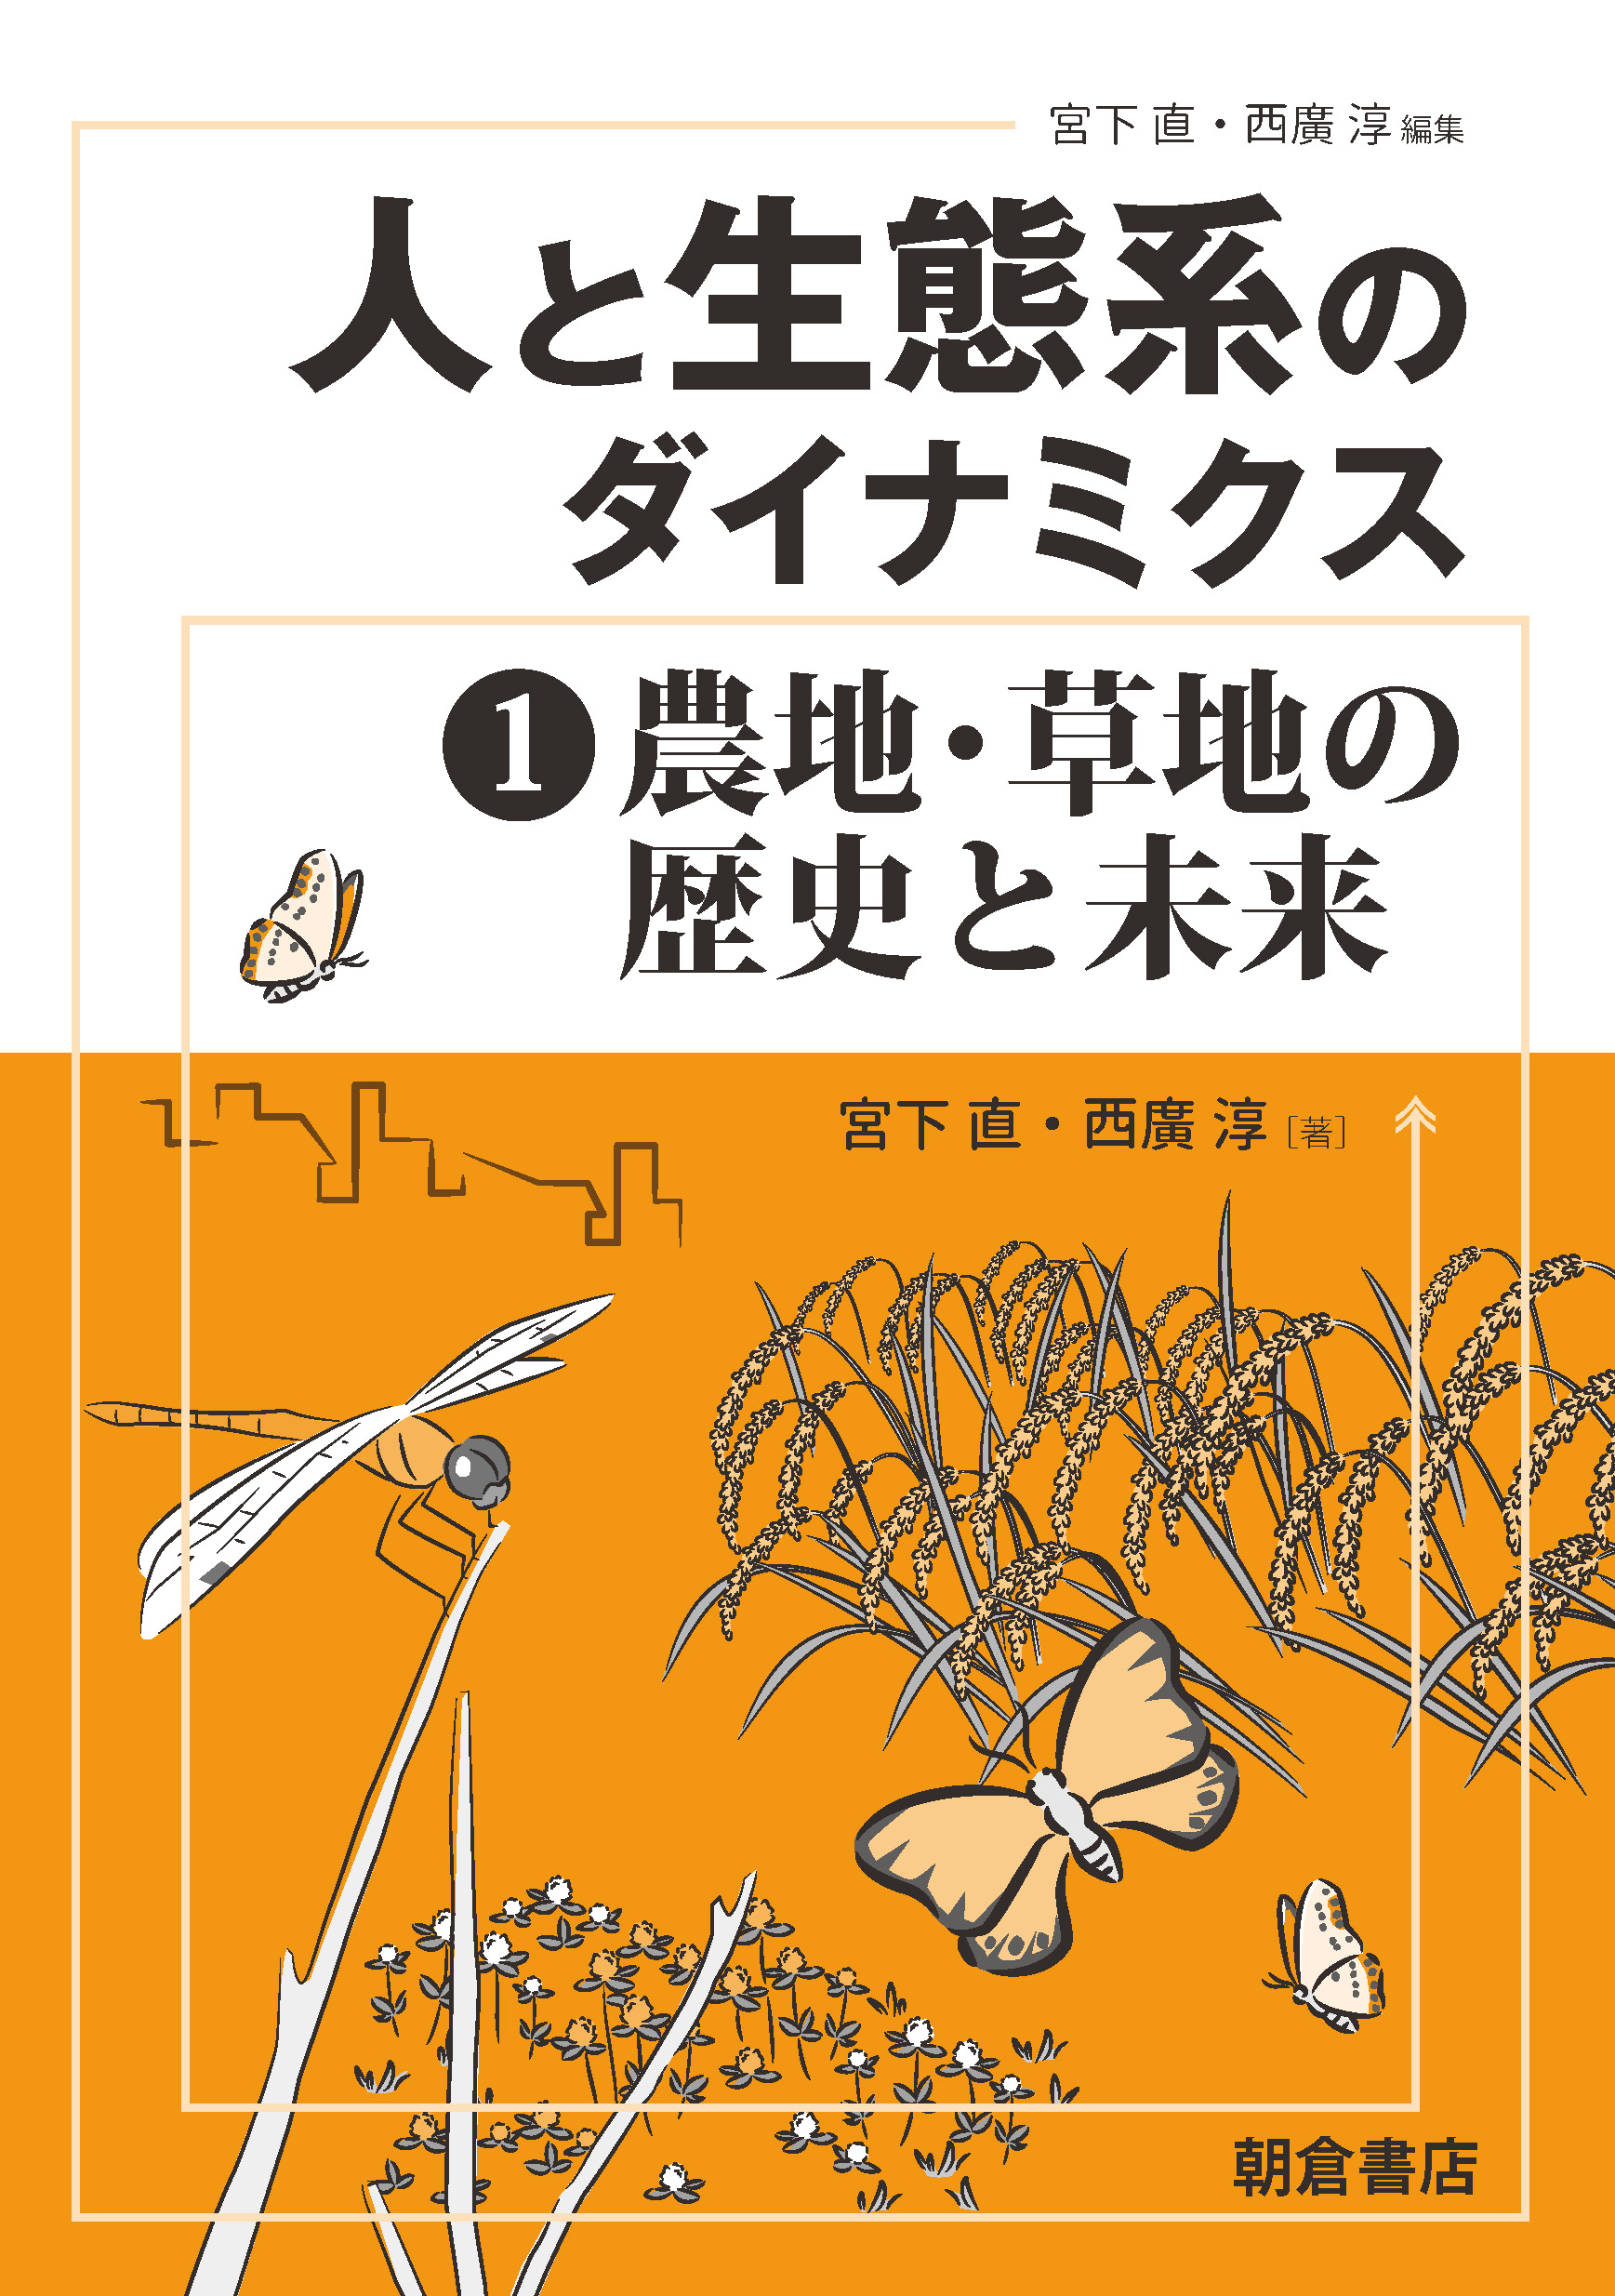 オレンジの表紙に農作物と昆虫のイラスト 